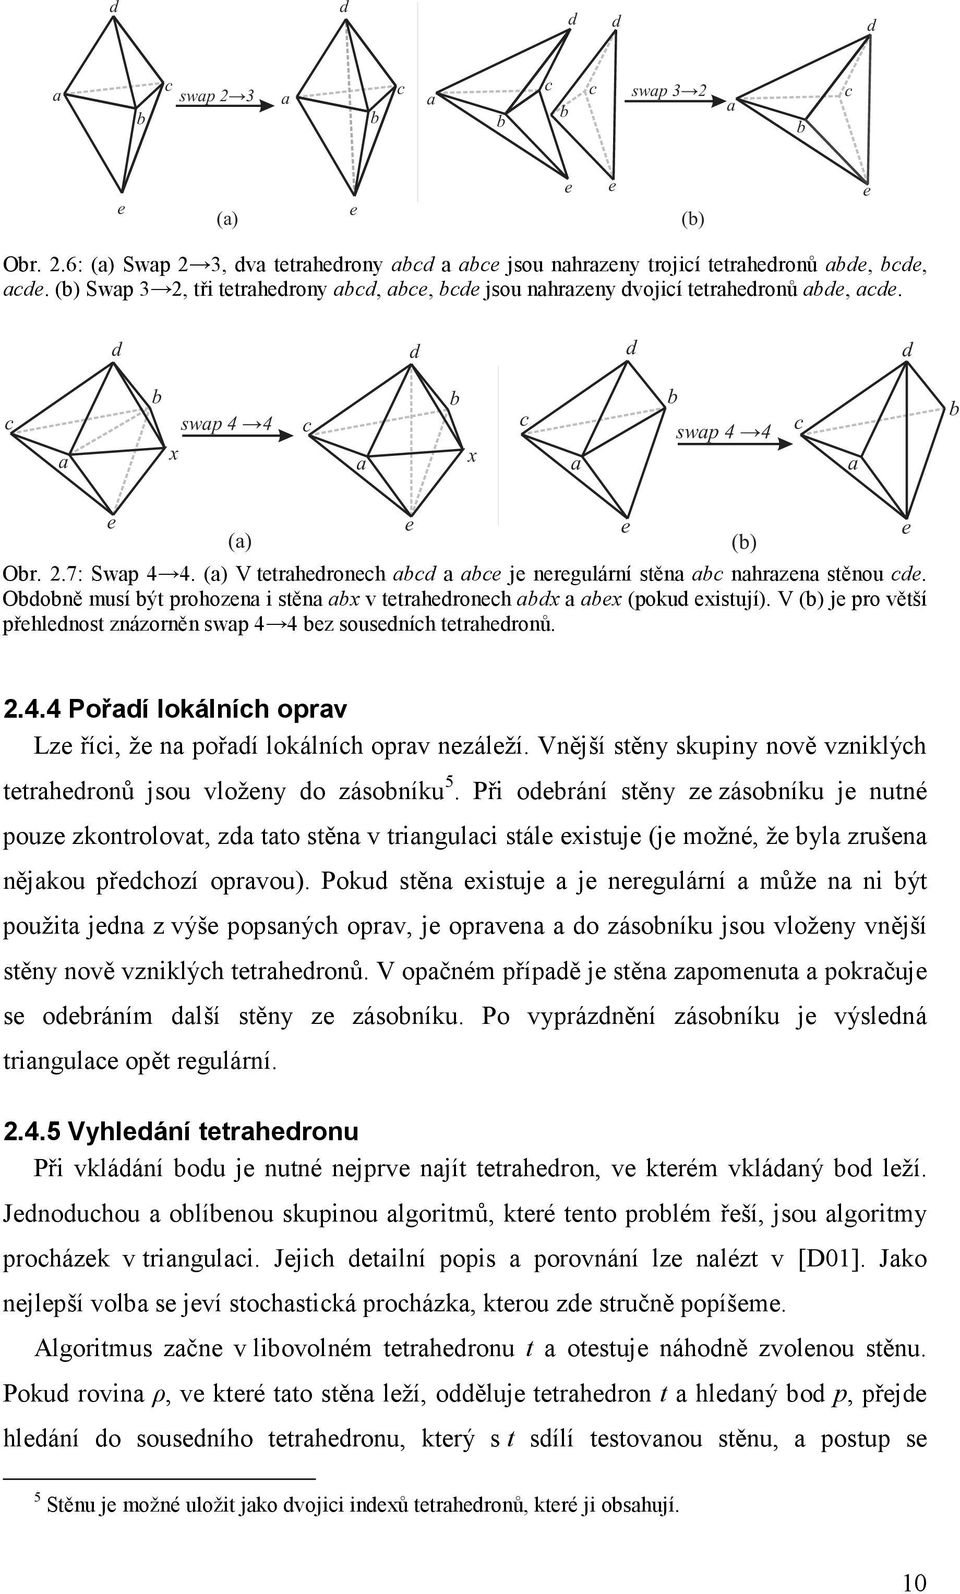 (a) V tetrahedronech abcd a abce je neregulární stěna abc nahrazena stěnou cde. Obdobně musí být prohozena i stěna abx v tetrahedronech abdx a abex (pokud existují).